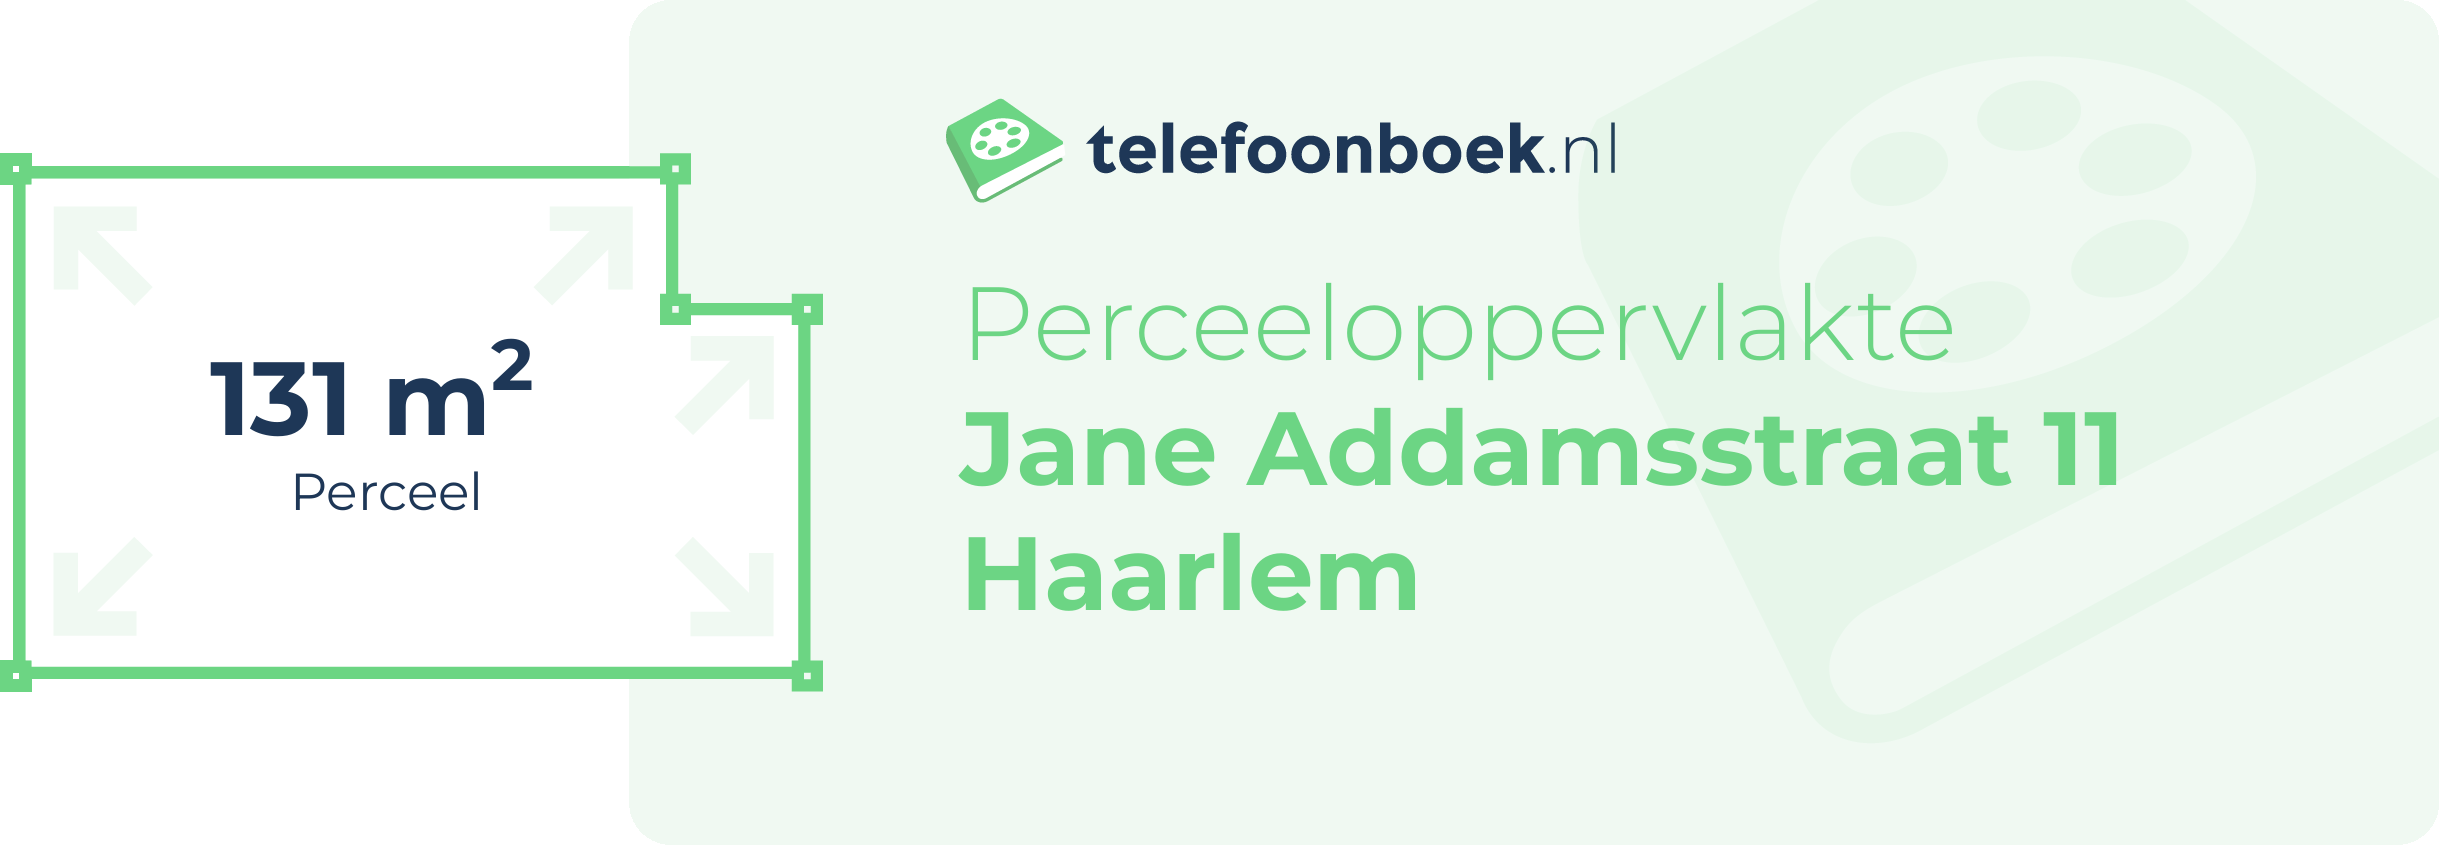 Perceeloppervlakte Jane Addamsstraat 11 Haarlem